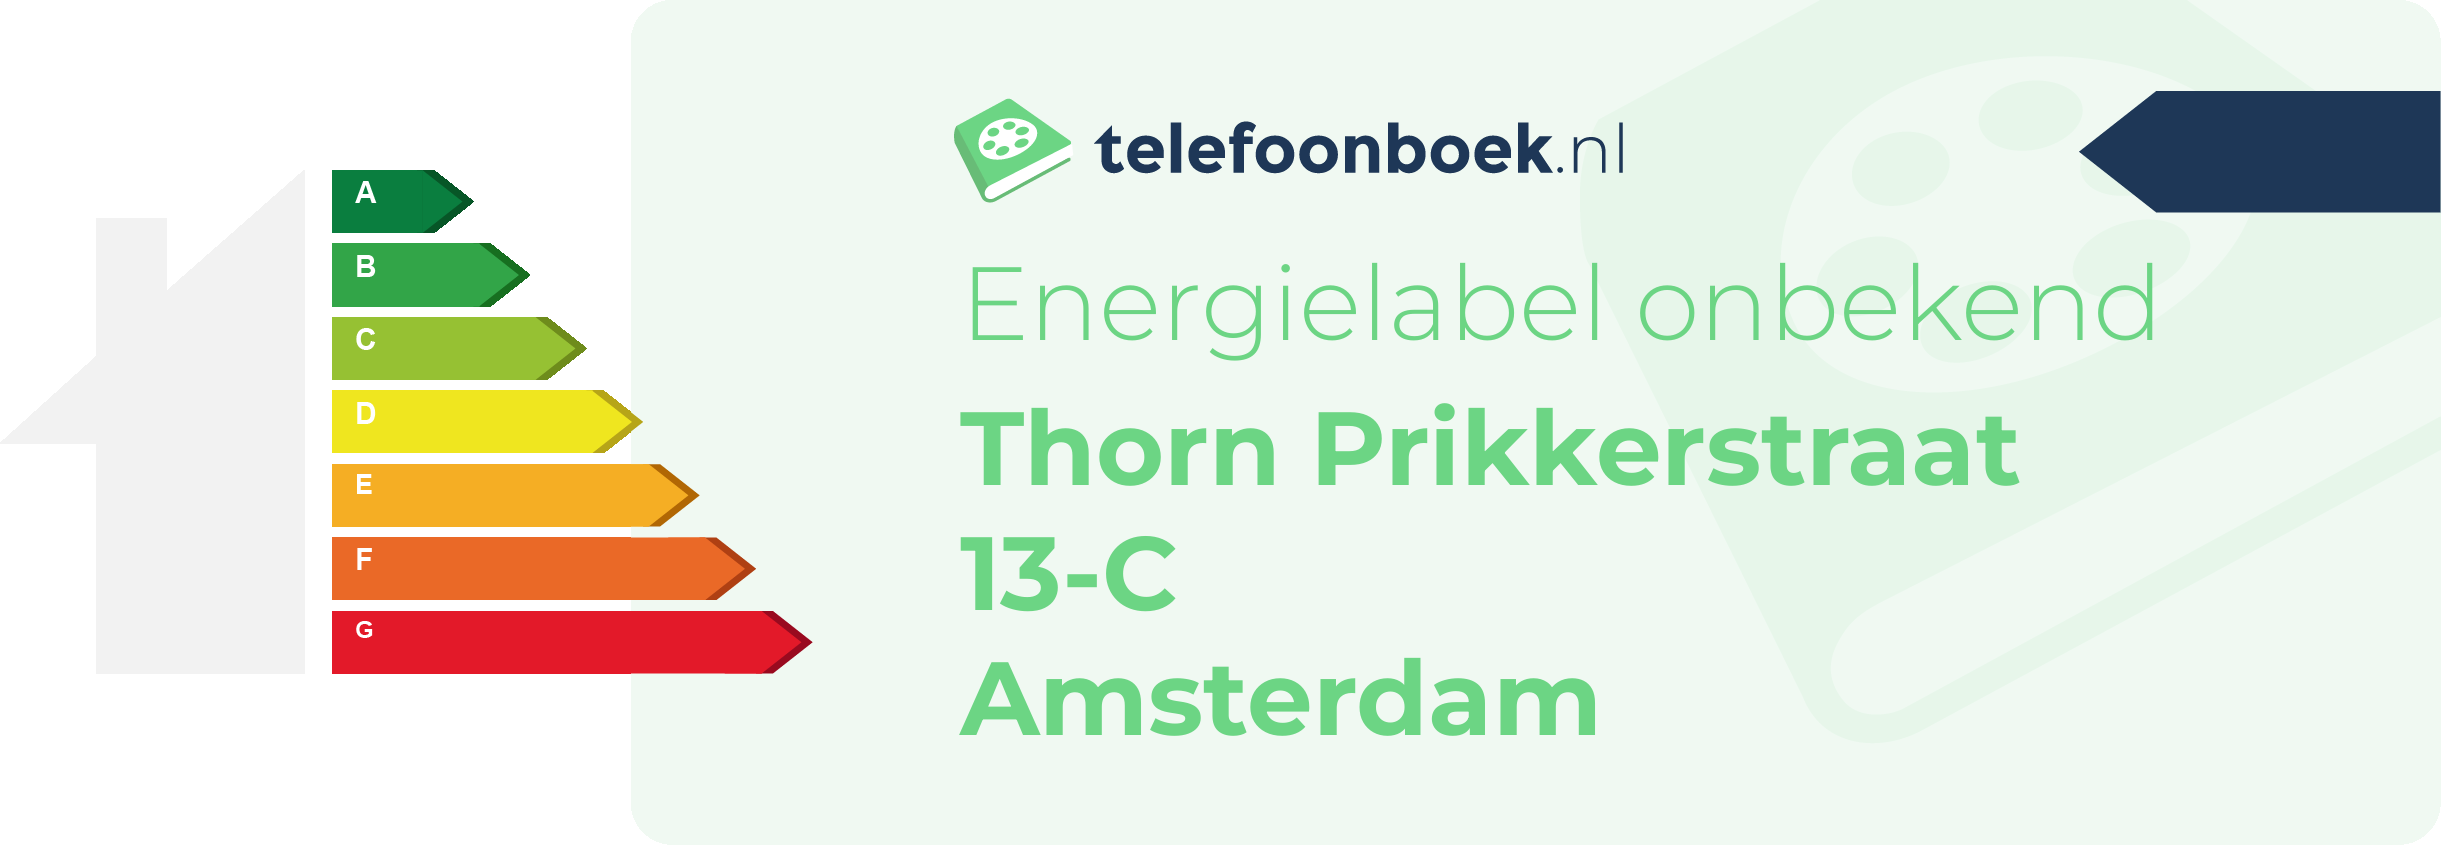 Energielabel Thorn Prikkerstraat 13-C Amsterdam